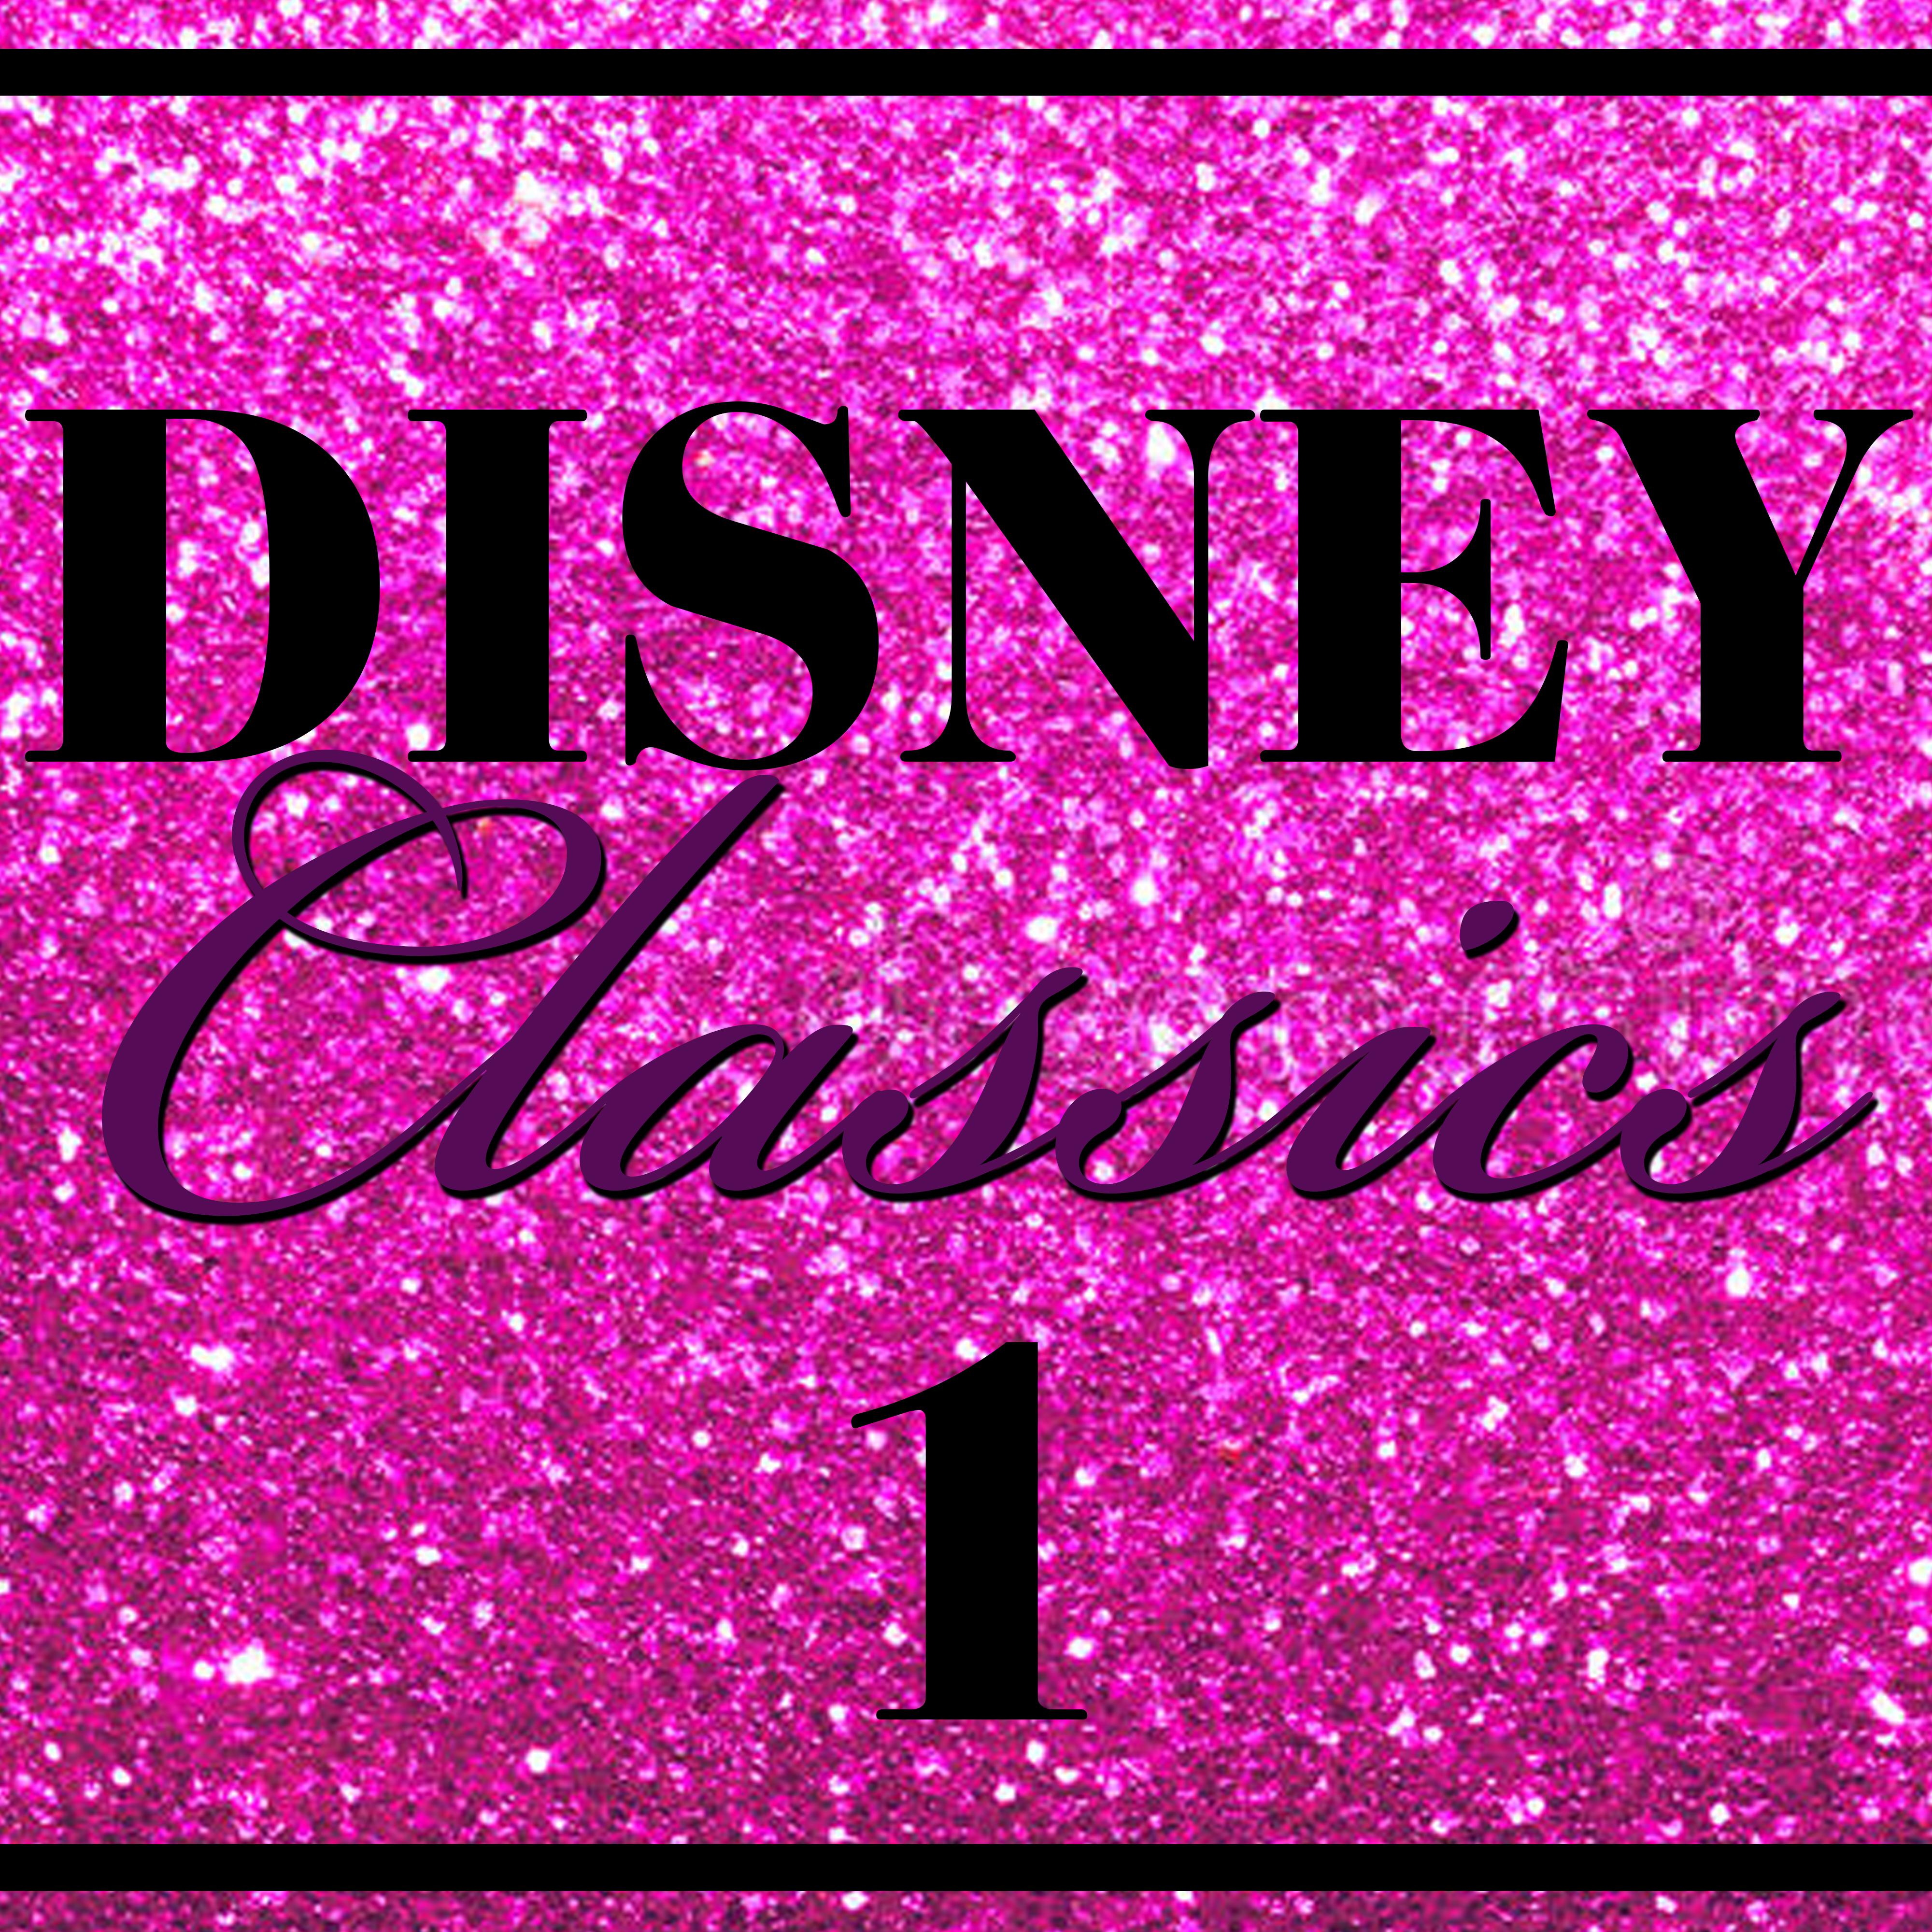 Disney - The Classics, Vol. 1